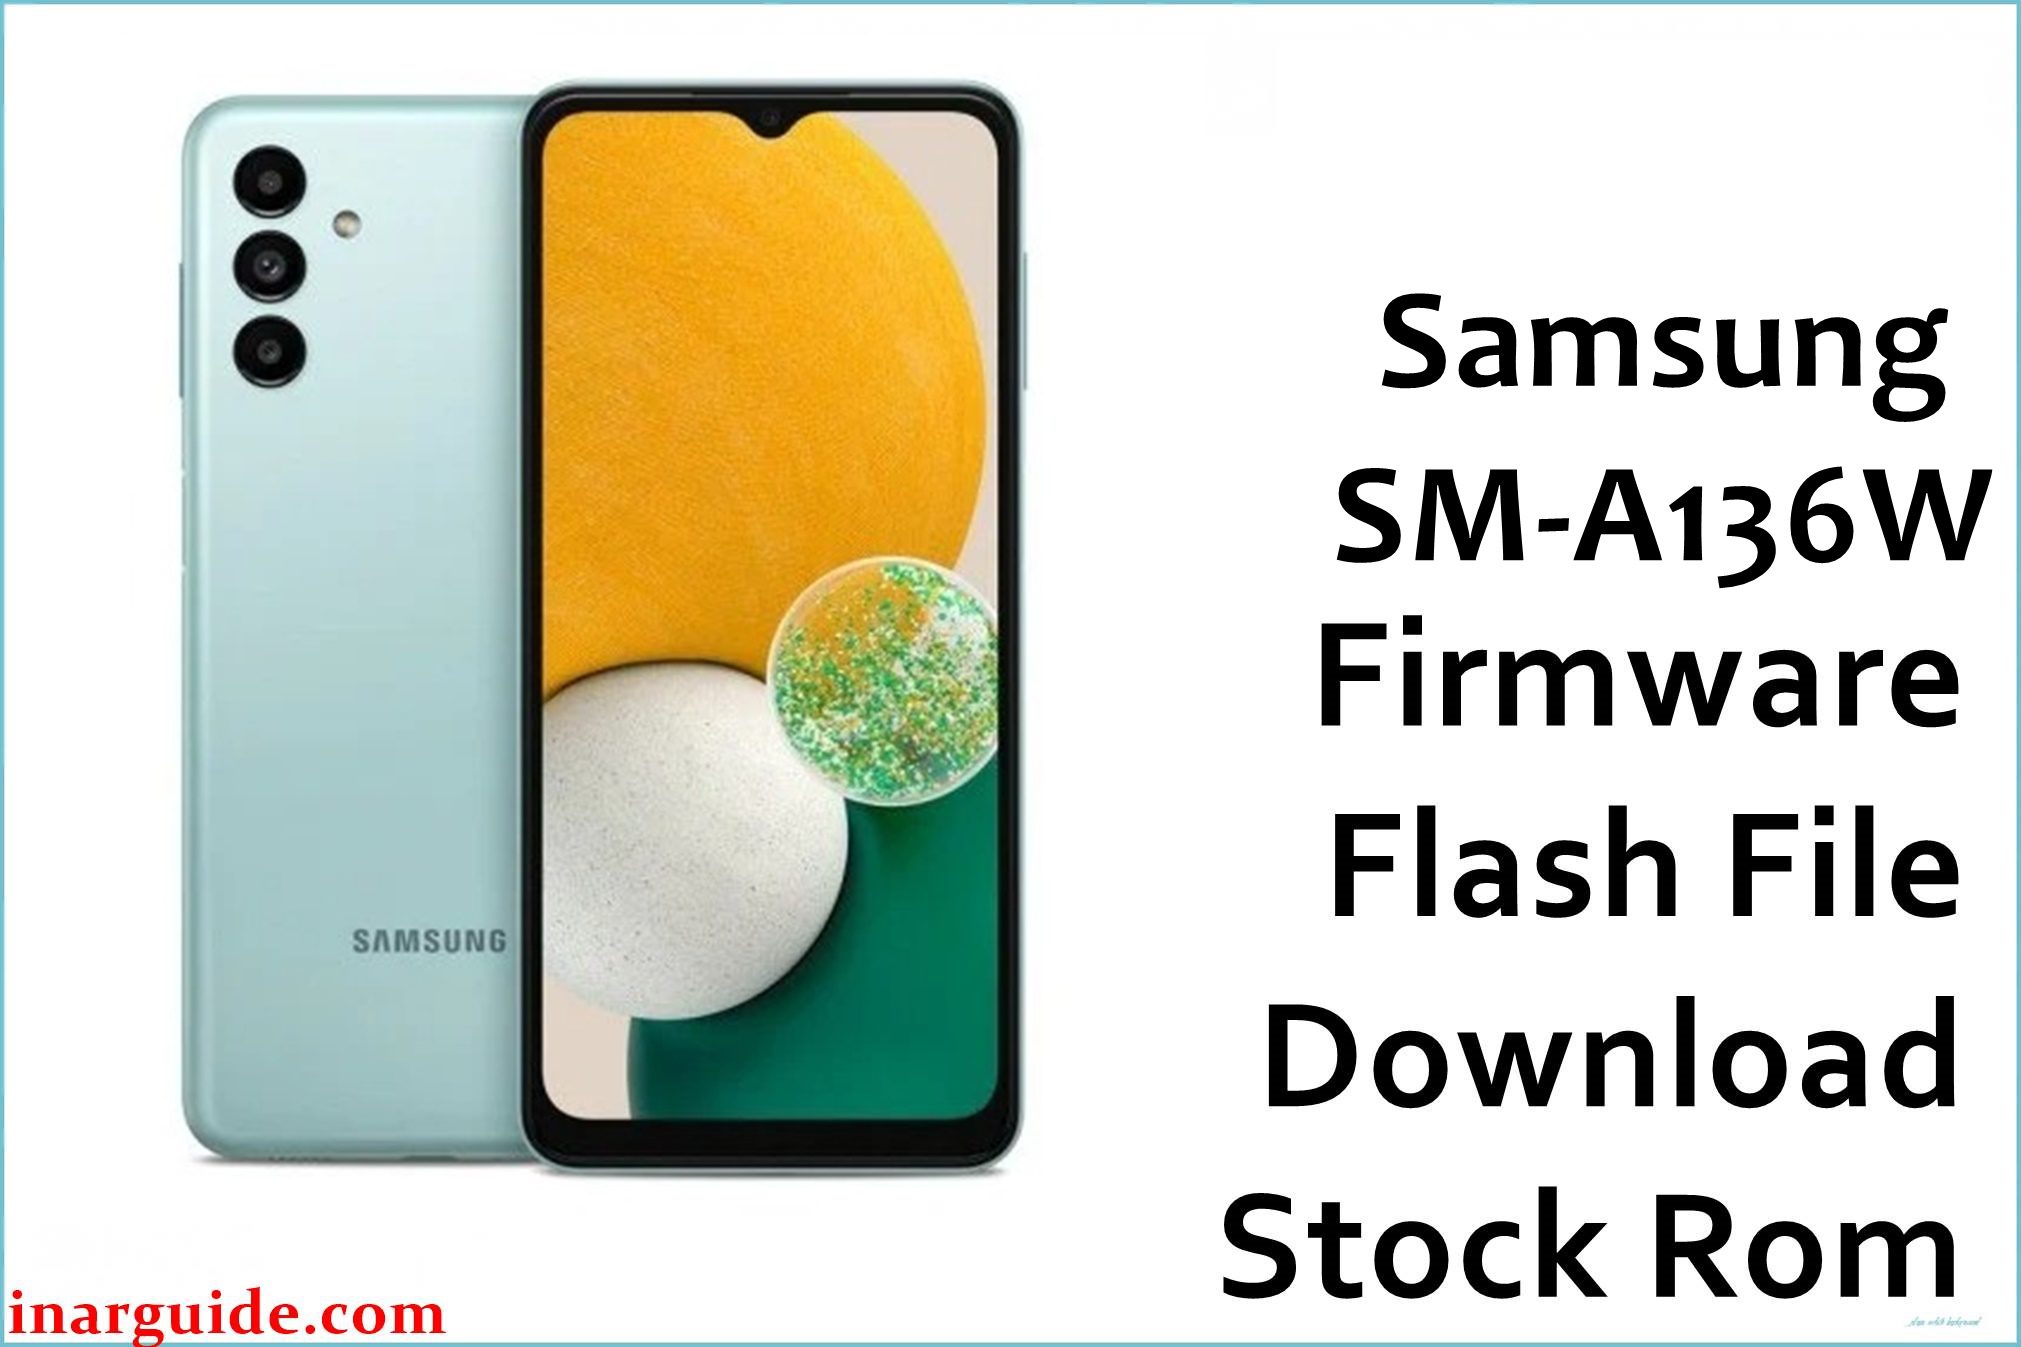 Samsung Galaxy A13 5G SM-A136W